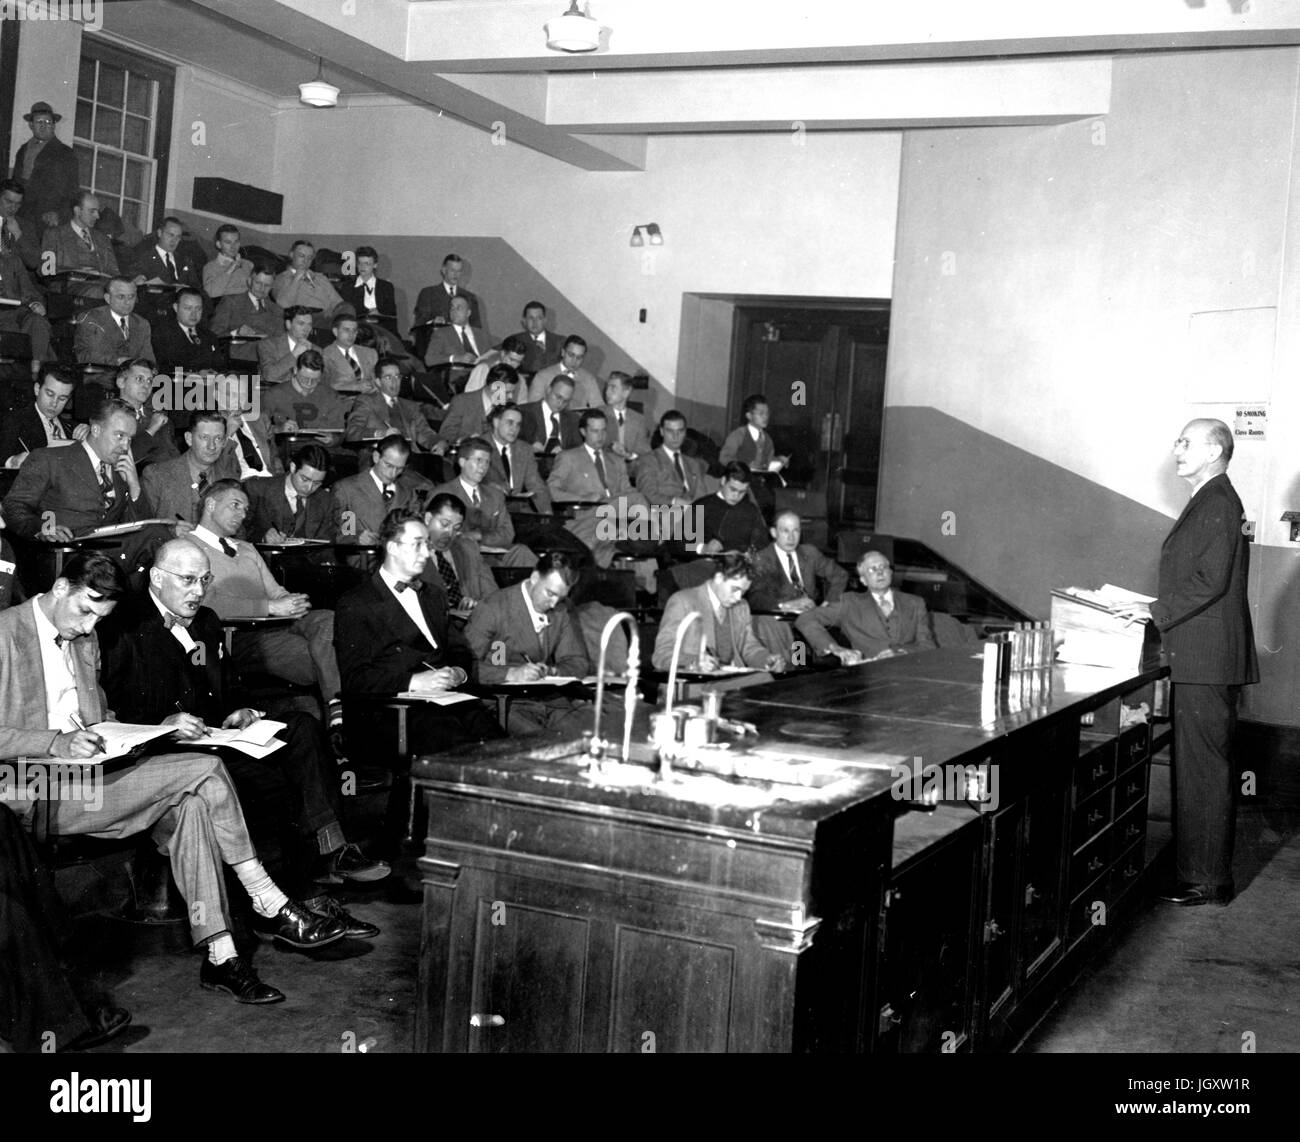 Un soir de l'Université Johns Hopkins college class est assis dans une salle de conférences l'adherence notes comme un professeur est à l'avant de la salle des conférences, 1930. Banque D'Images